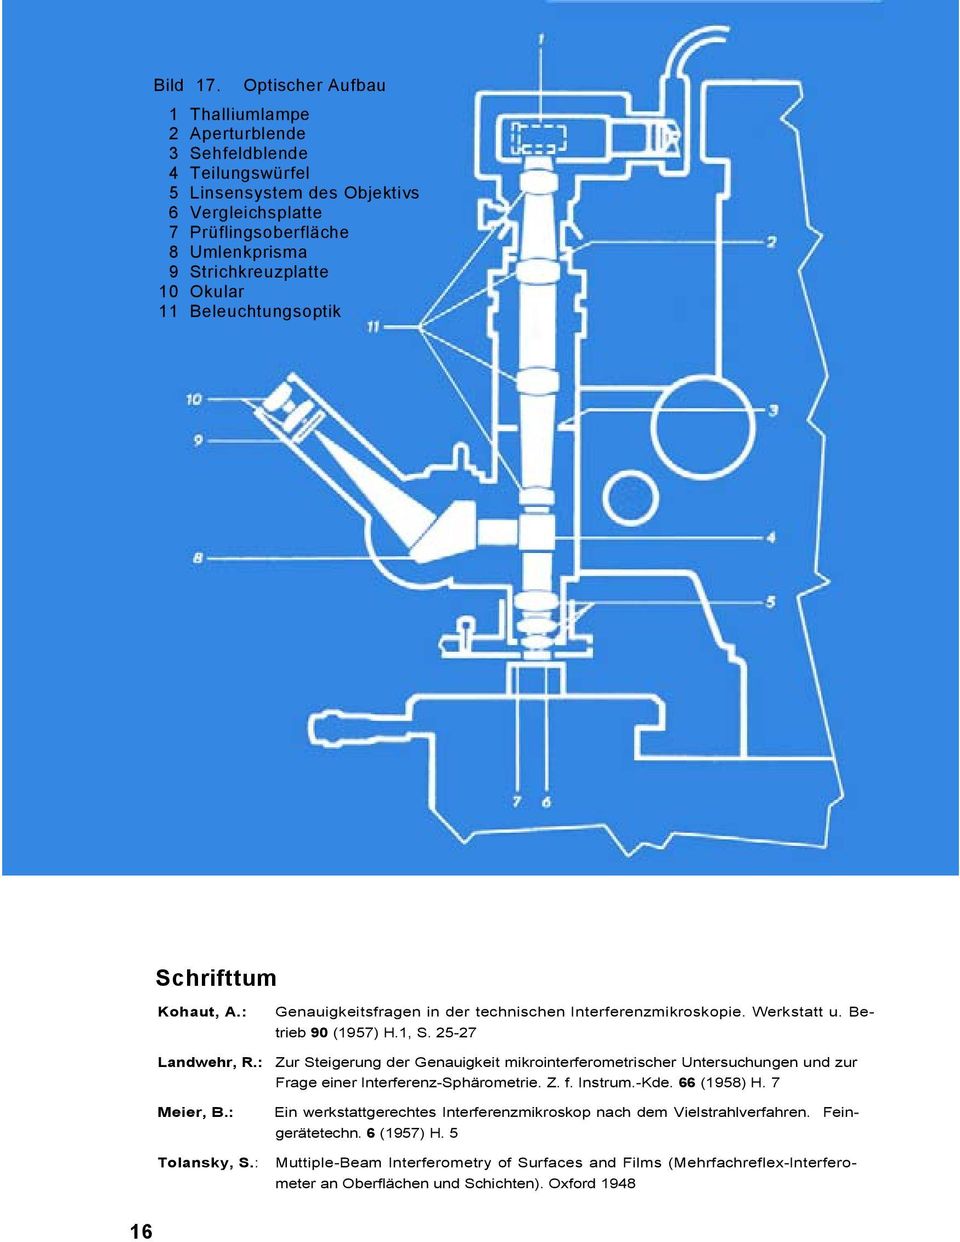 Okular 11 Beleuchtungsoptik Schrifttum Kohaut, A.: Genauigkeitsfragen in der technischen Interferenzmikroskopie. Werkstatt u. Be- trieb 90 (1957) H.1, S. 25-27 Landwehr, R.